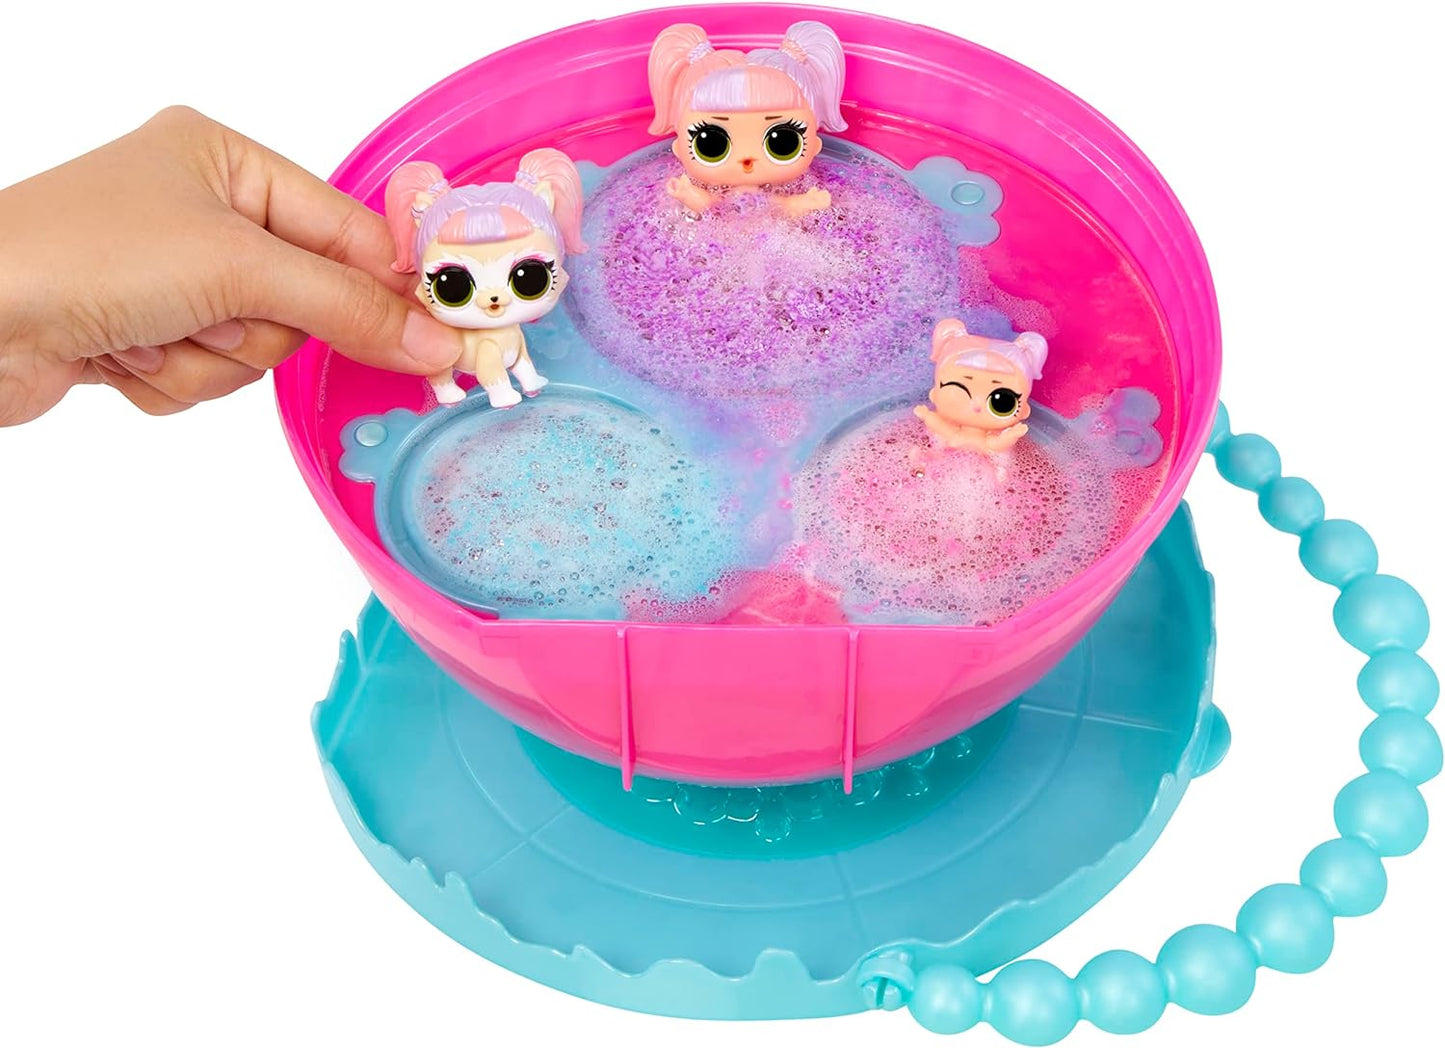 LOL Surprise Bubble Surprise Deluxe - Bonecas colecionáveis, animal de estimação, irmãzinha, surpresas, acessórios, Bubble Surprise Unboxing, reação de espuma com mudança de cor em água morna - ótimo presente para meninas a partir de 4 anos